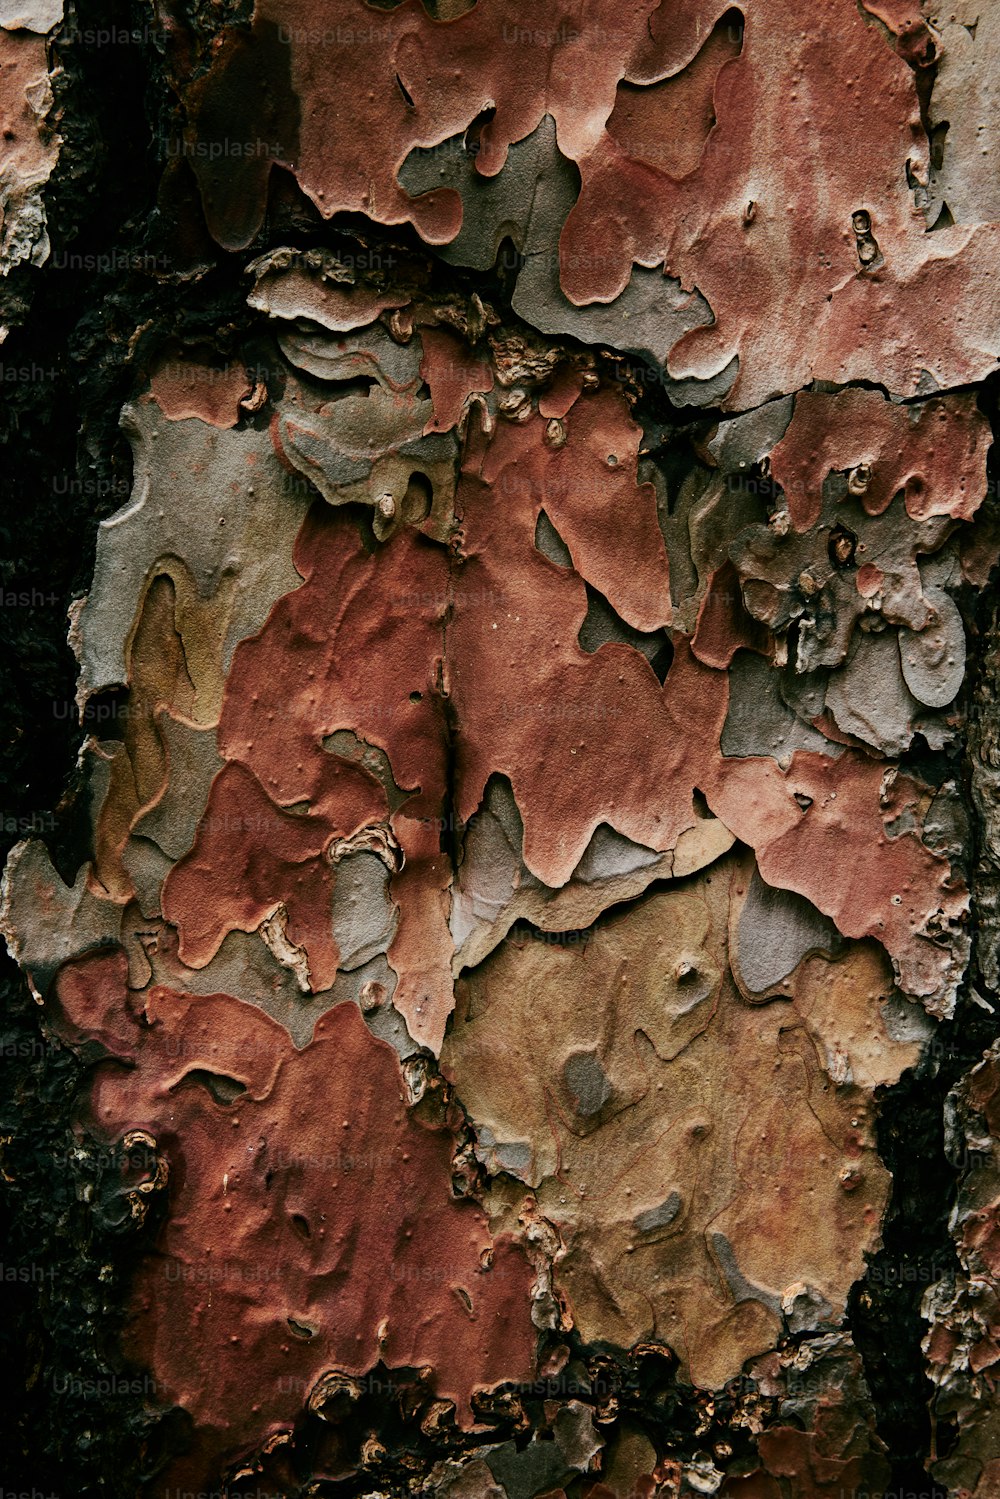 Un primer plano del tronco de un árbol con pintura descascarada